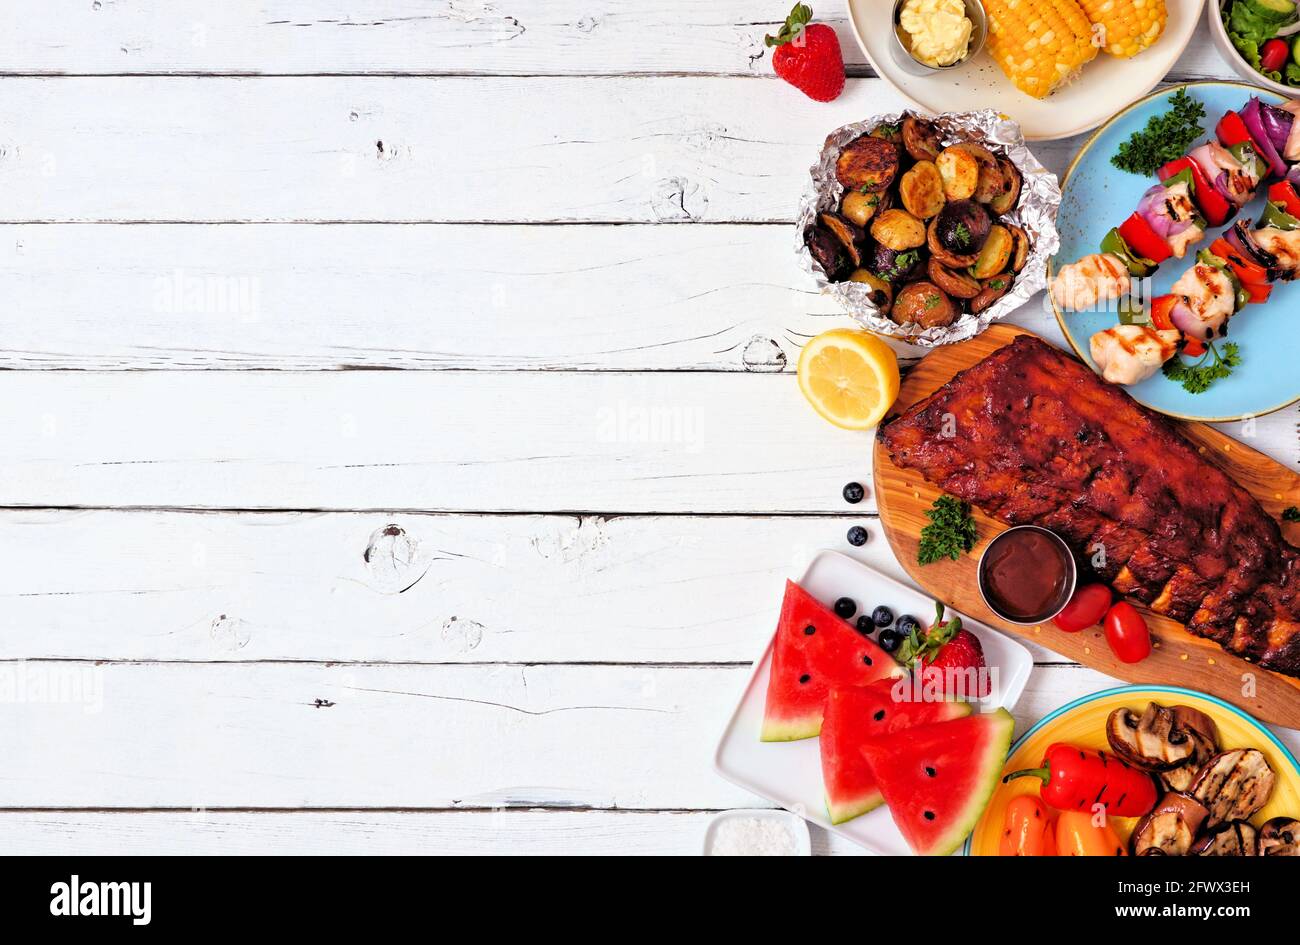 Sommer BBQ oder Picknick-Essen Seitenrand. Auswahl an gegrilltem Fleisch, Gemüse, Obst und Kartoffeln. Von oben nach unten Blick auf einen weißen Holzhintergrund. Kopie sp Stockfoto